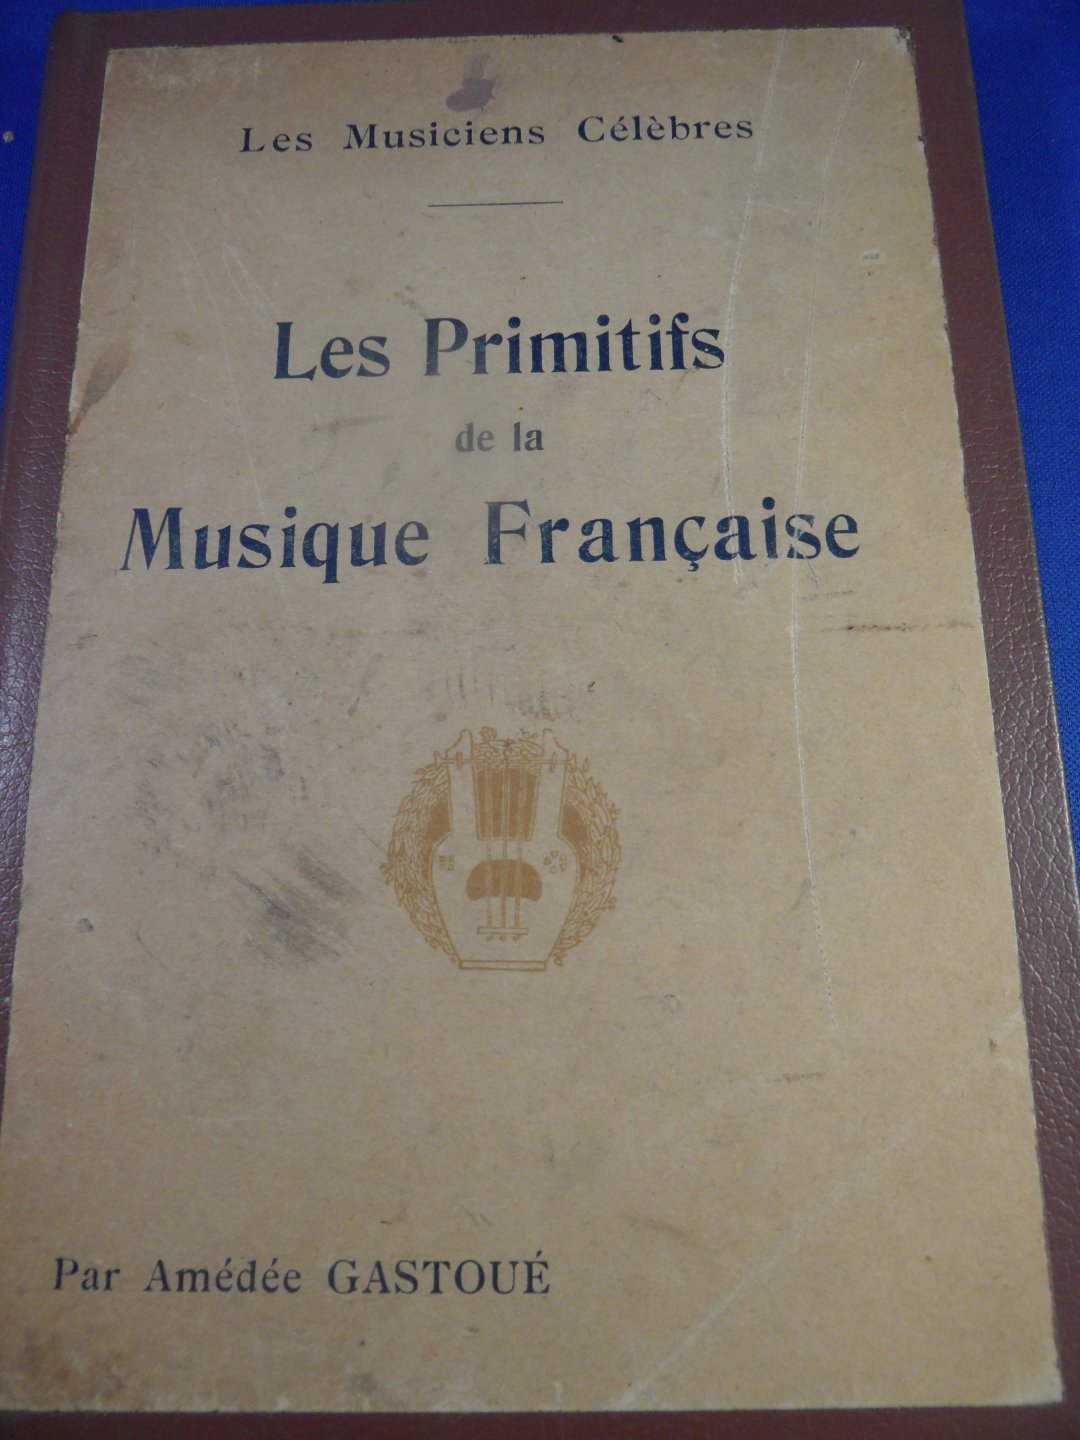 Gastoué Amédée - Les primitifs de la musique francaise. Les musiciens célebrès